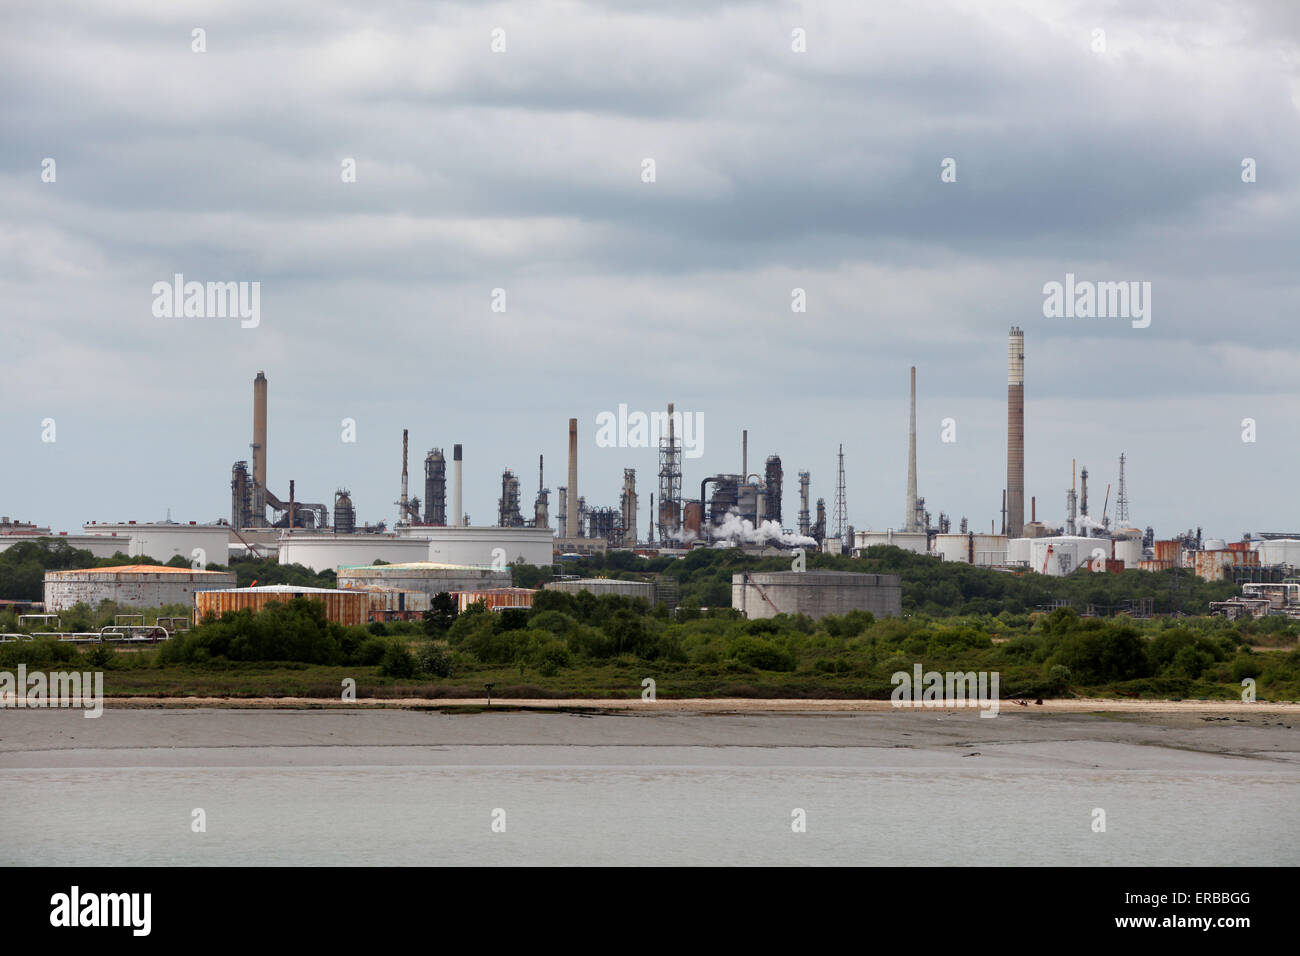 Raffinerie de Fawley près de Southampton la plus importante raffinerie au Royaume-Uni Banque D'Images